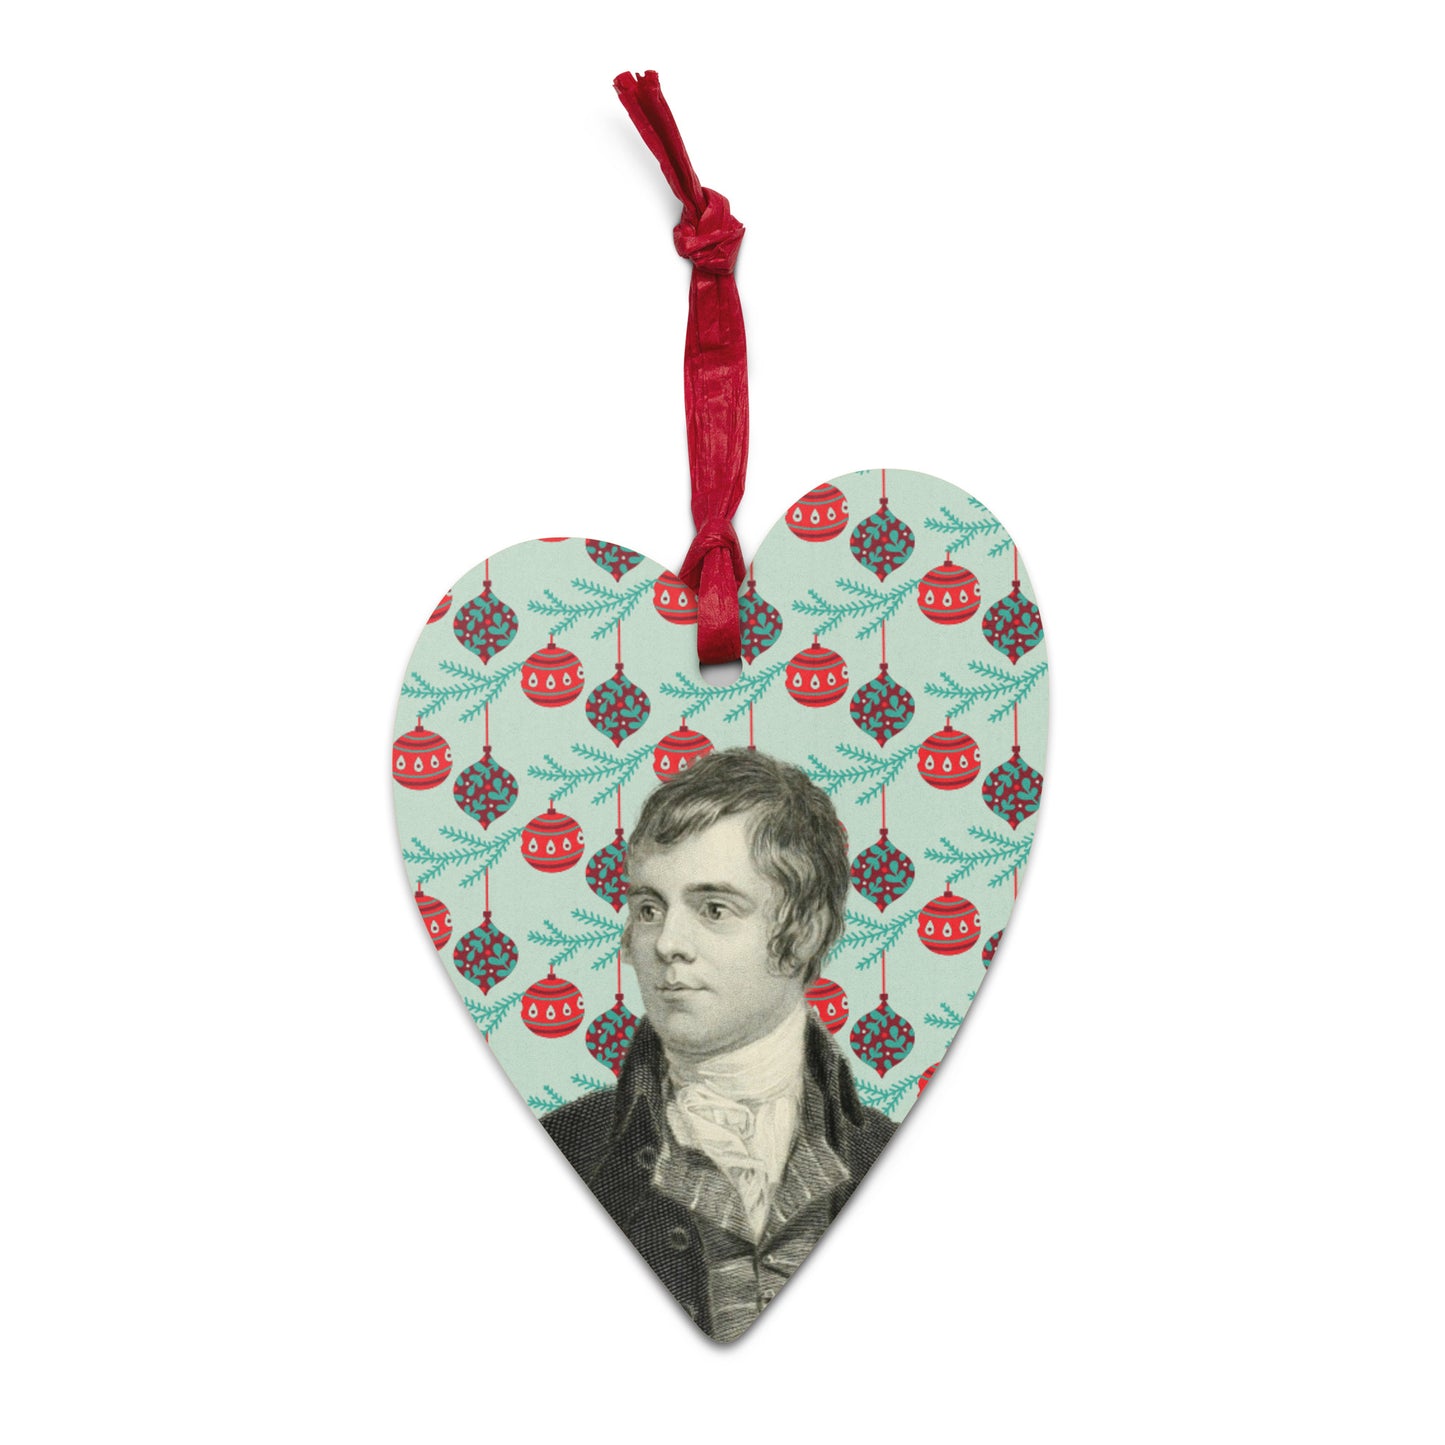 Robert Burns heart-shaped wooden Christmas ornament